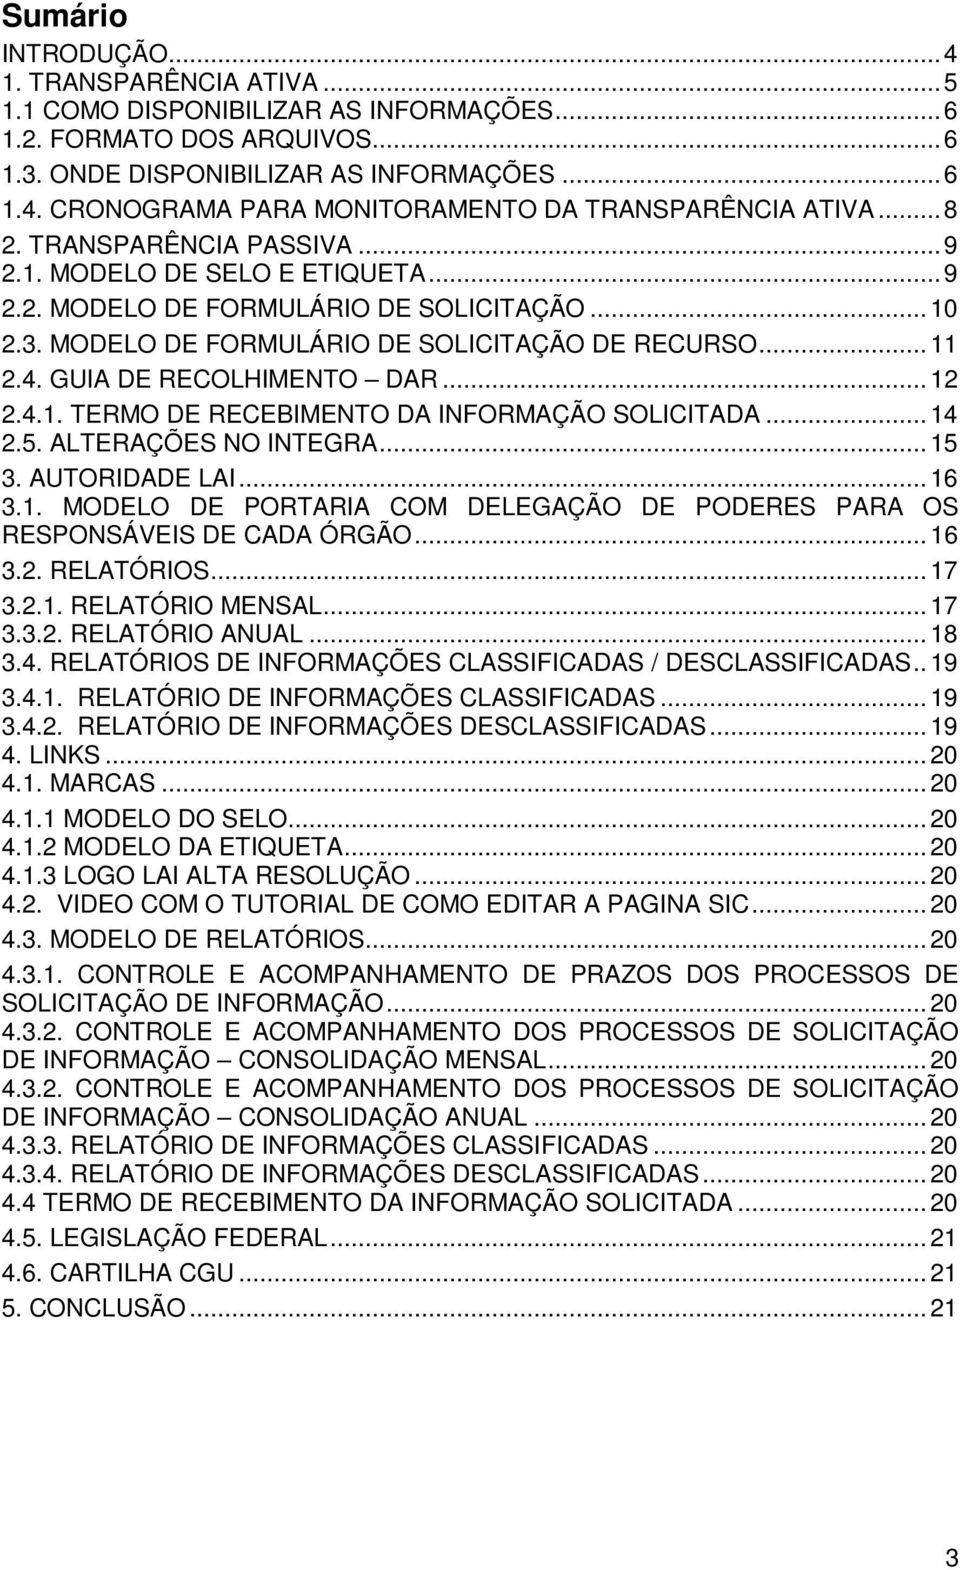 GUIA DE RECOLHIMENTO DAR... 12 2.4.1. TERMO DE RECEBIMENTO DA INFORMAÇÃO SOLICITADA... 14 2.5. ALTERAÇÕES NO INTEGRA... 15 3. AUTORIDADE LAI... 16 3.1. MODELO DE PORTARIA COM DELEGAÇÃO DE PODERES PARA OS RESPONSÁVEIS DE CADA ÓRGÃO.